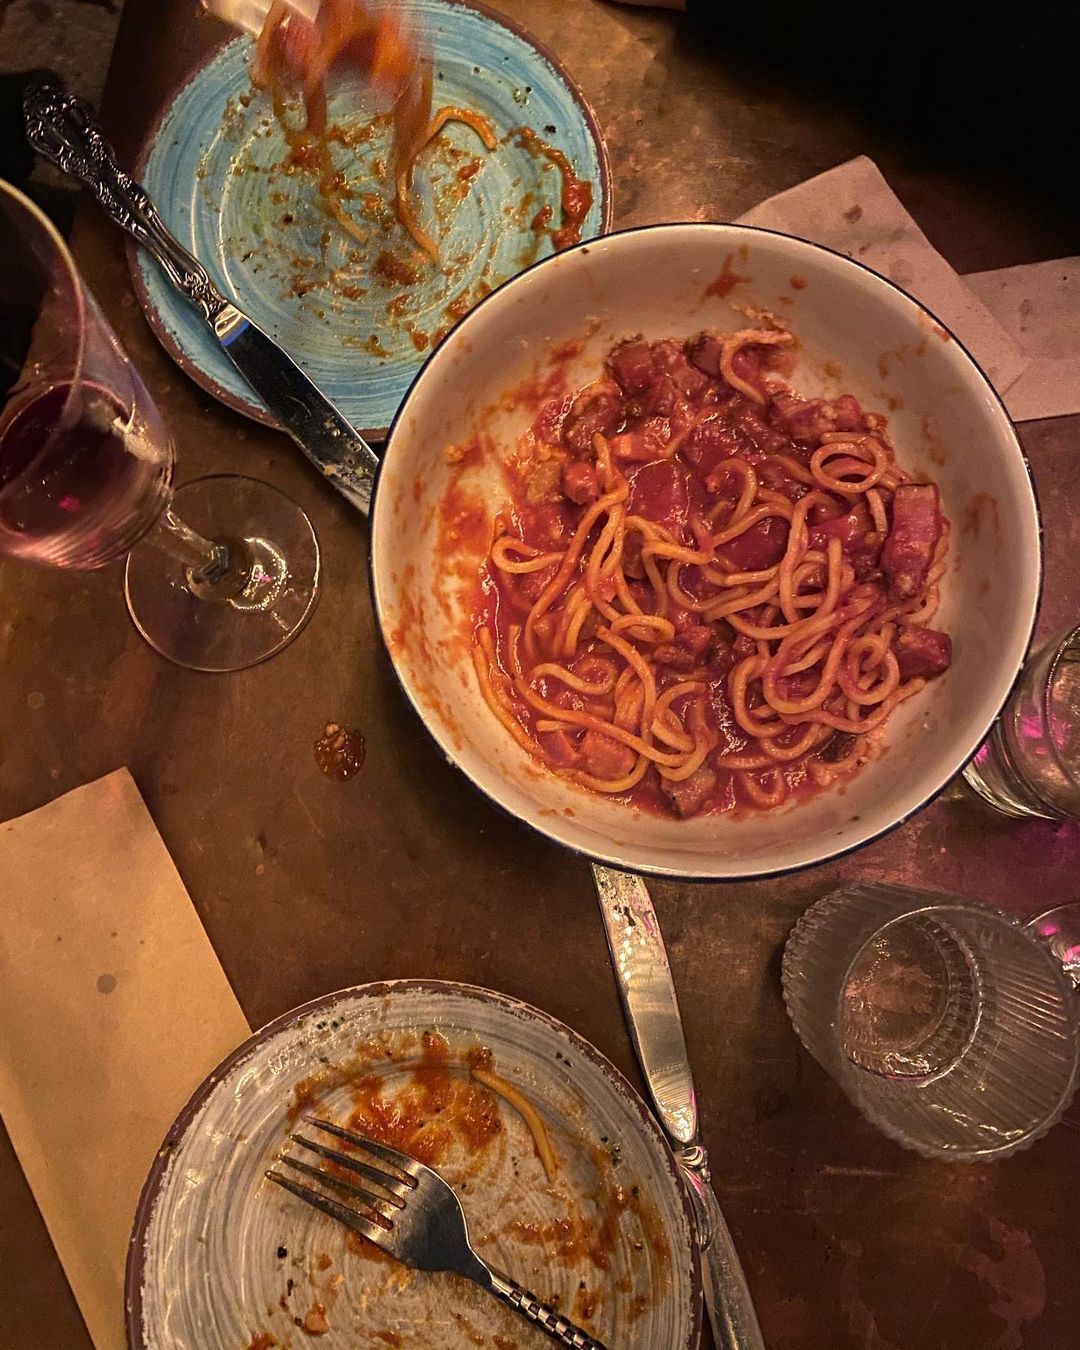 Plates of spaghetti